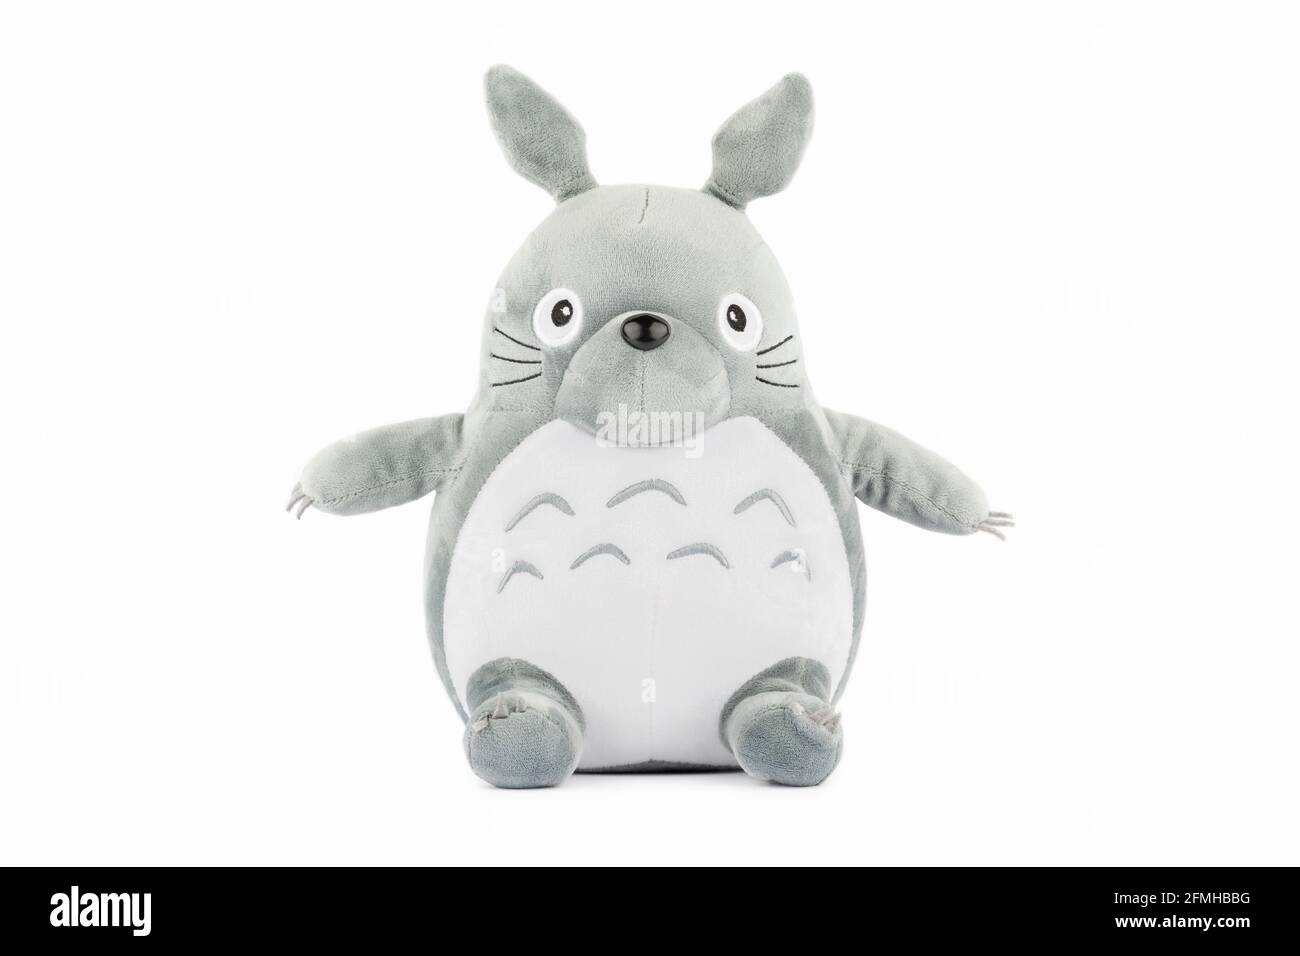 Un jouet en peluche du personnage Totoro du film mon voisin Totoro. Banque D'Images